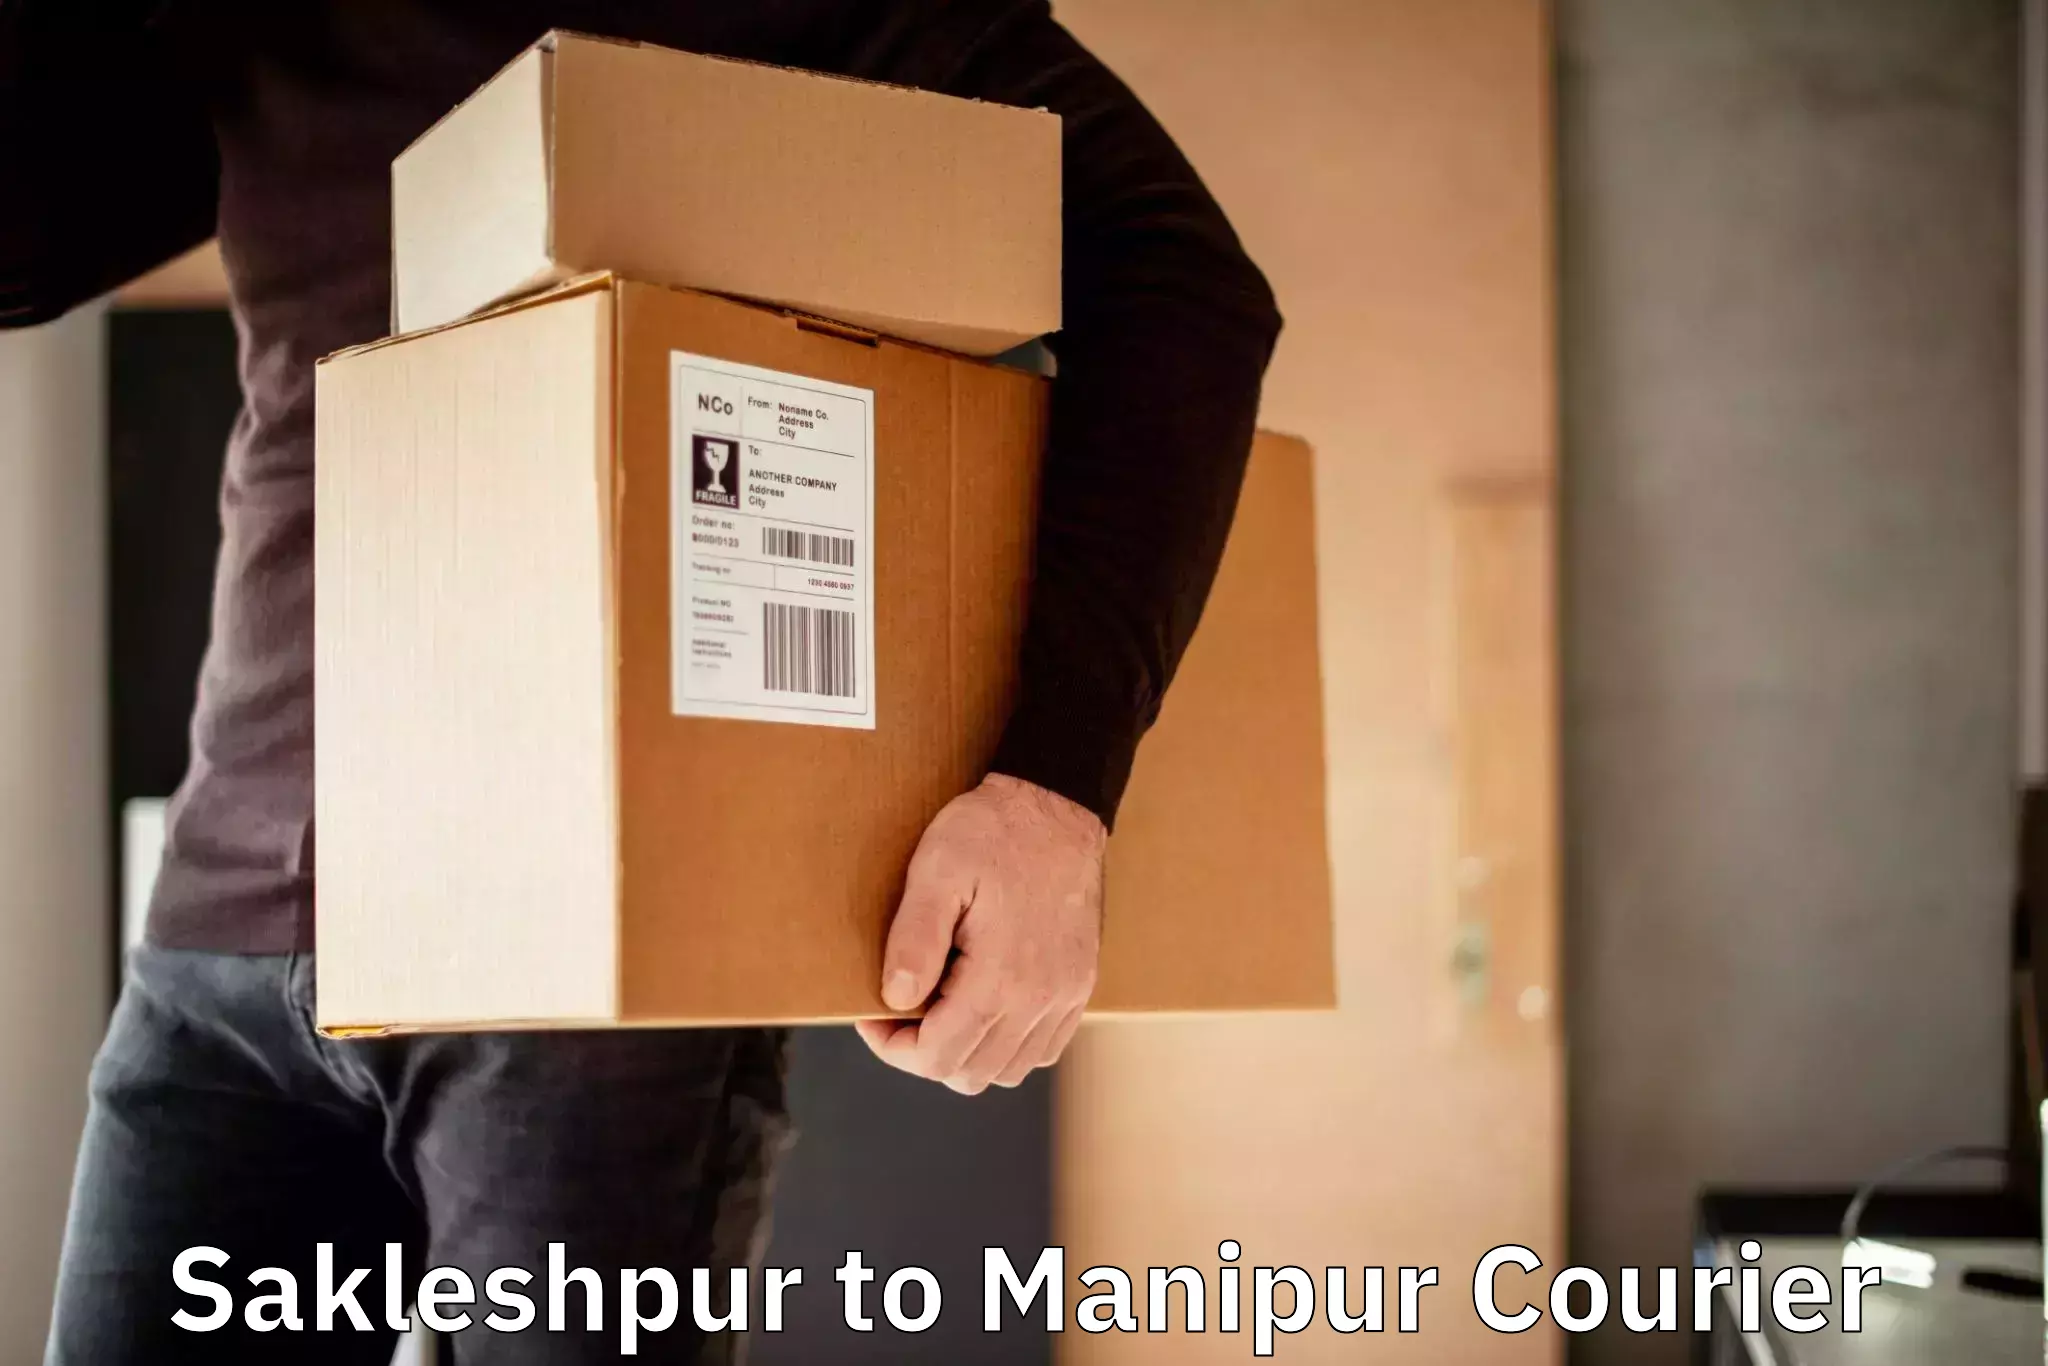 Global courier networks Sakleshpur to Moirang